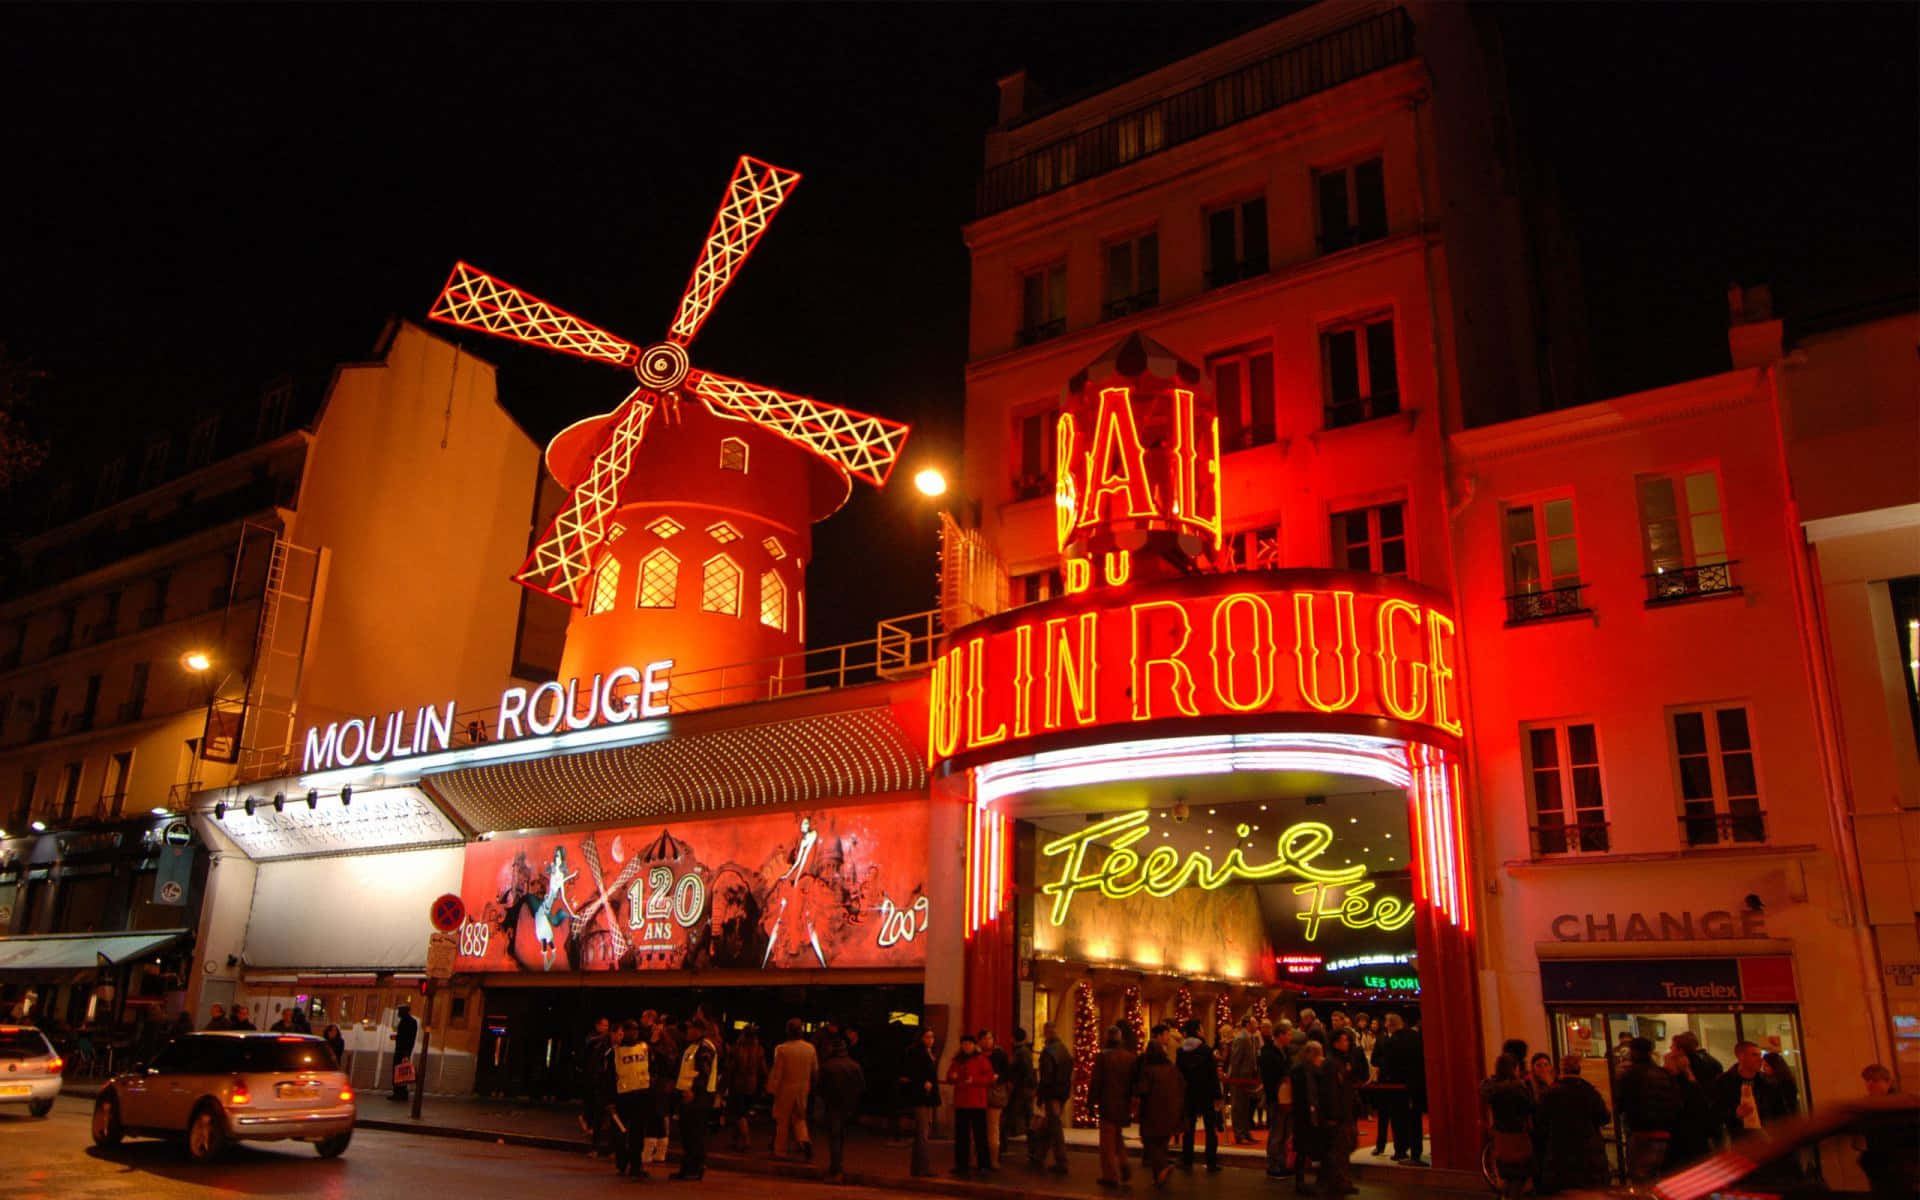 Moulin Rouge 1920 X 1200 Wallpaper